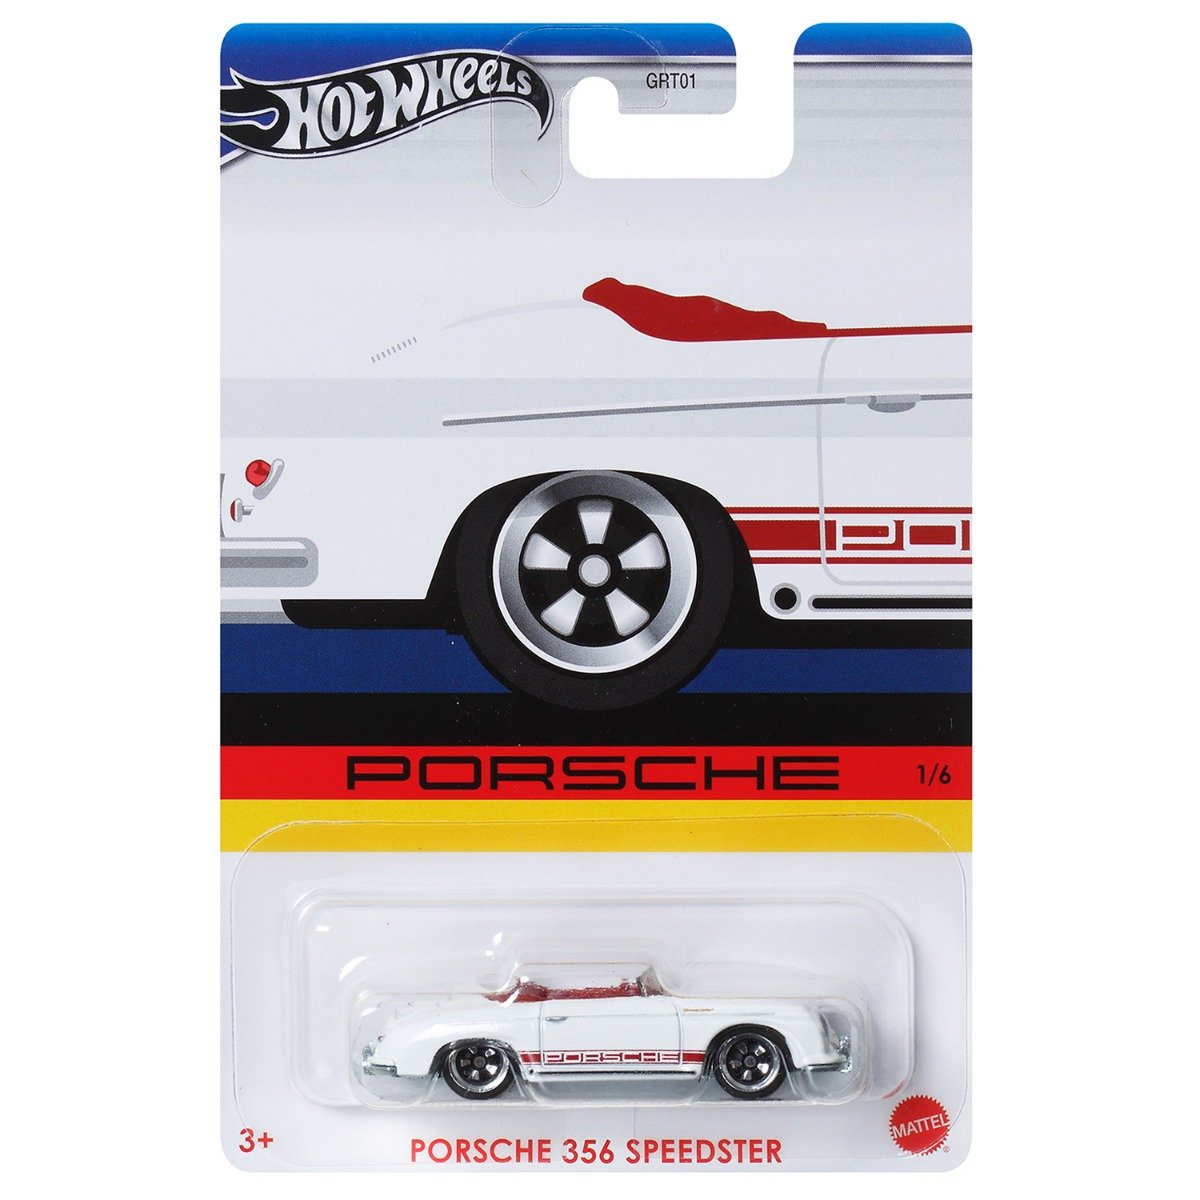 Masinuta metalica, Hot Wheels, Porsche 356 Speedster, 1:64, HRW56